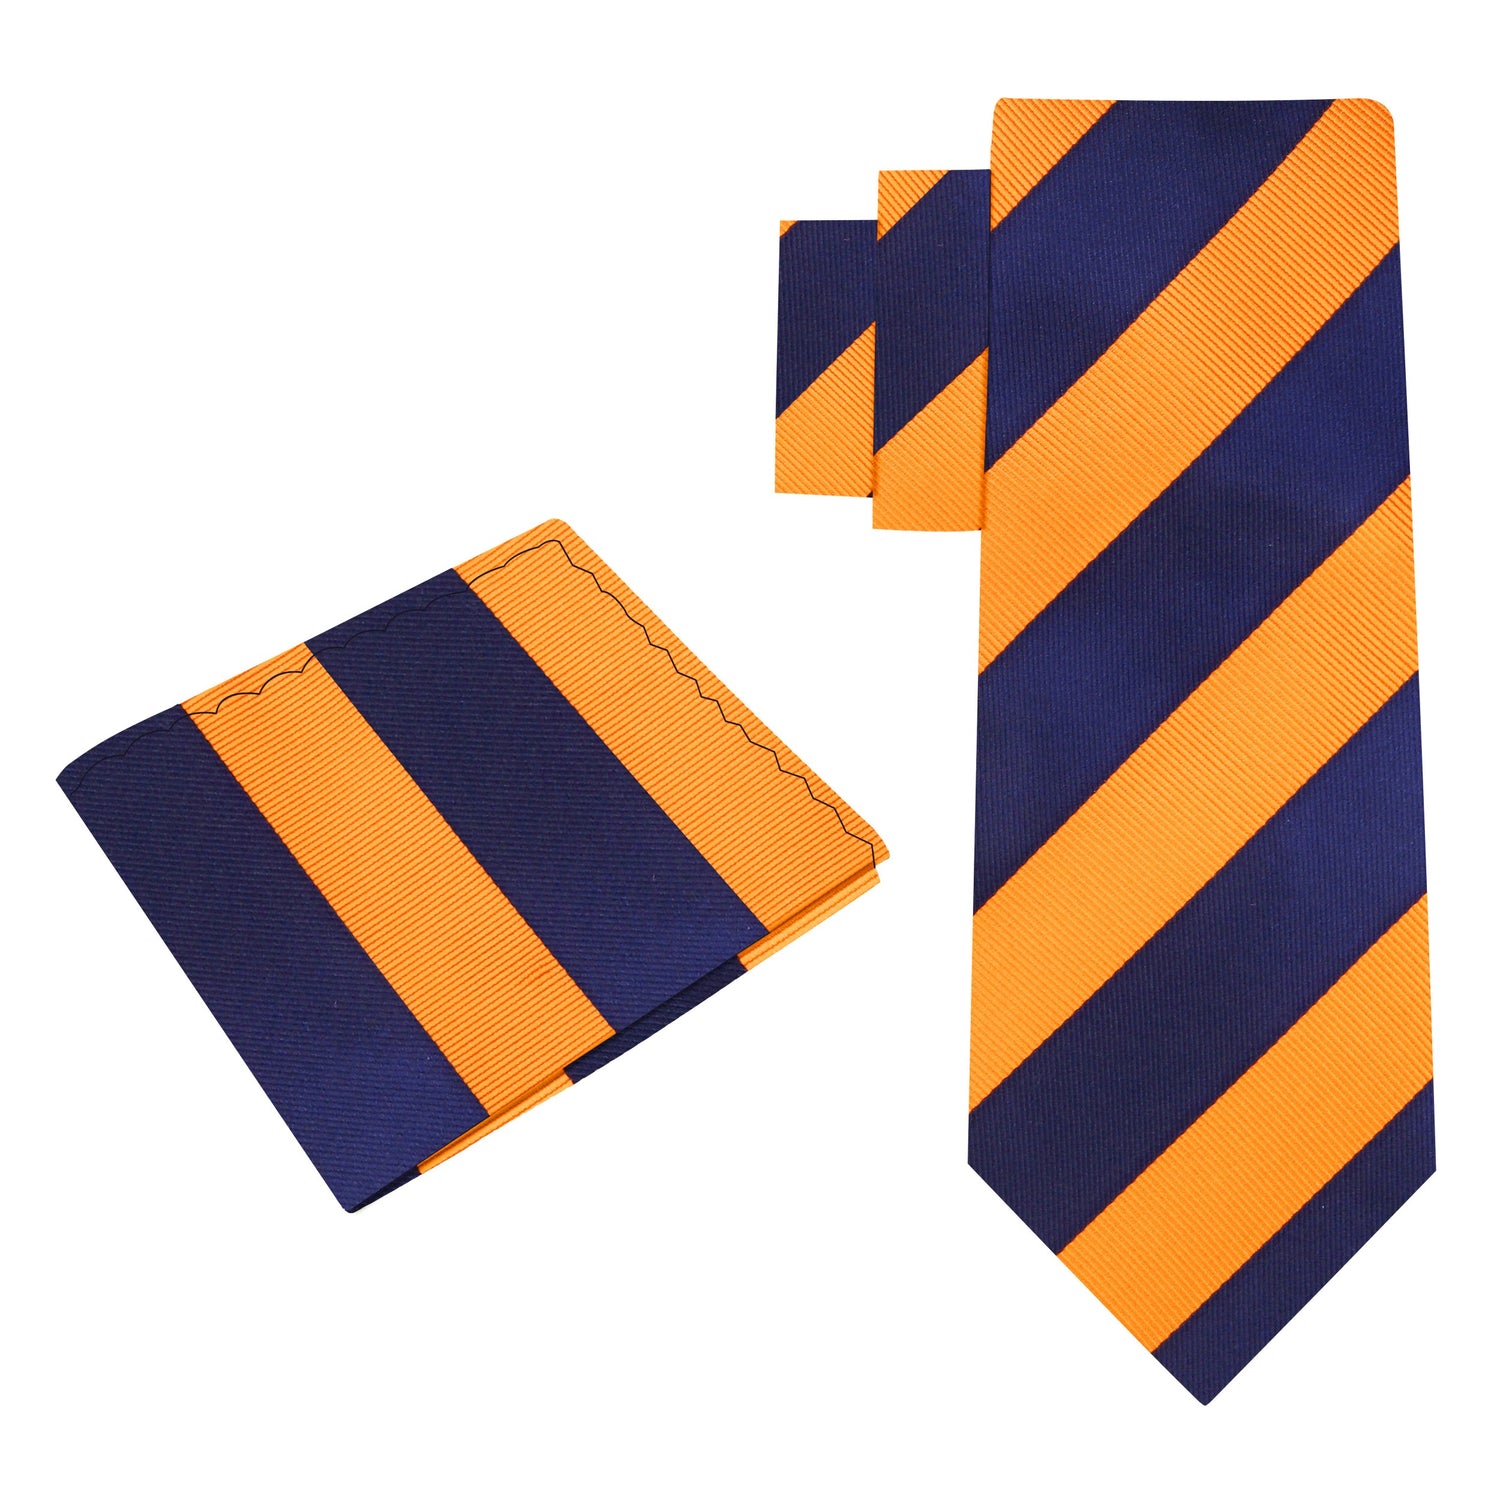 Alt View: A Orange And Blue Stripe Pattern Silk Necktie, Matching Pocket Square